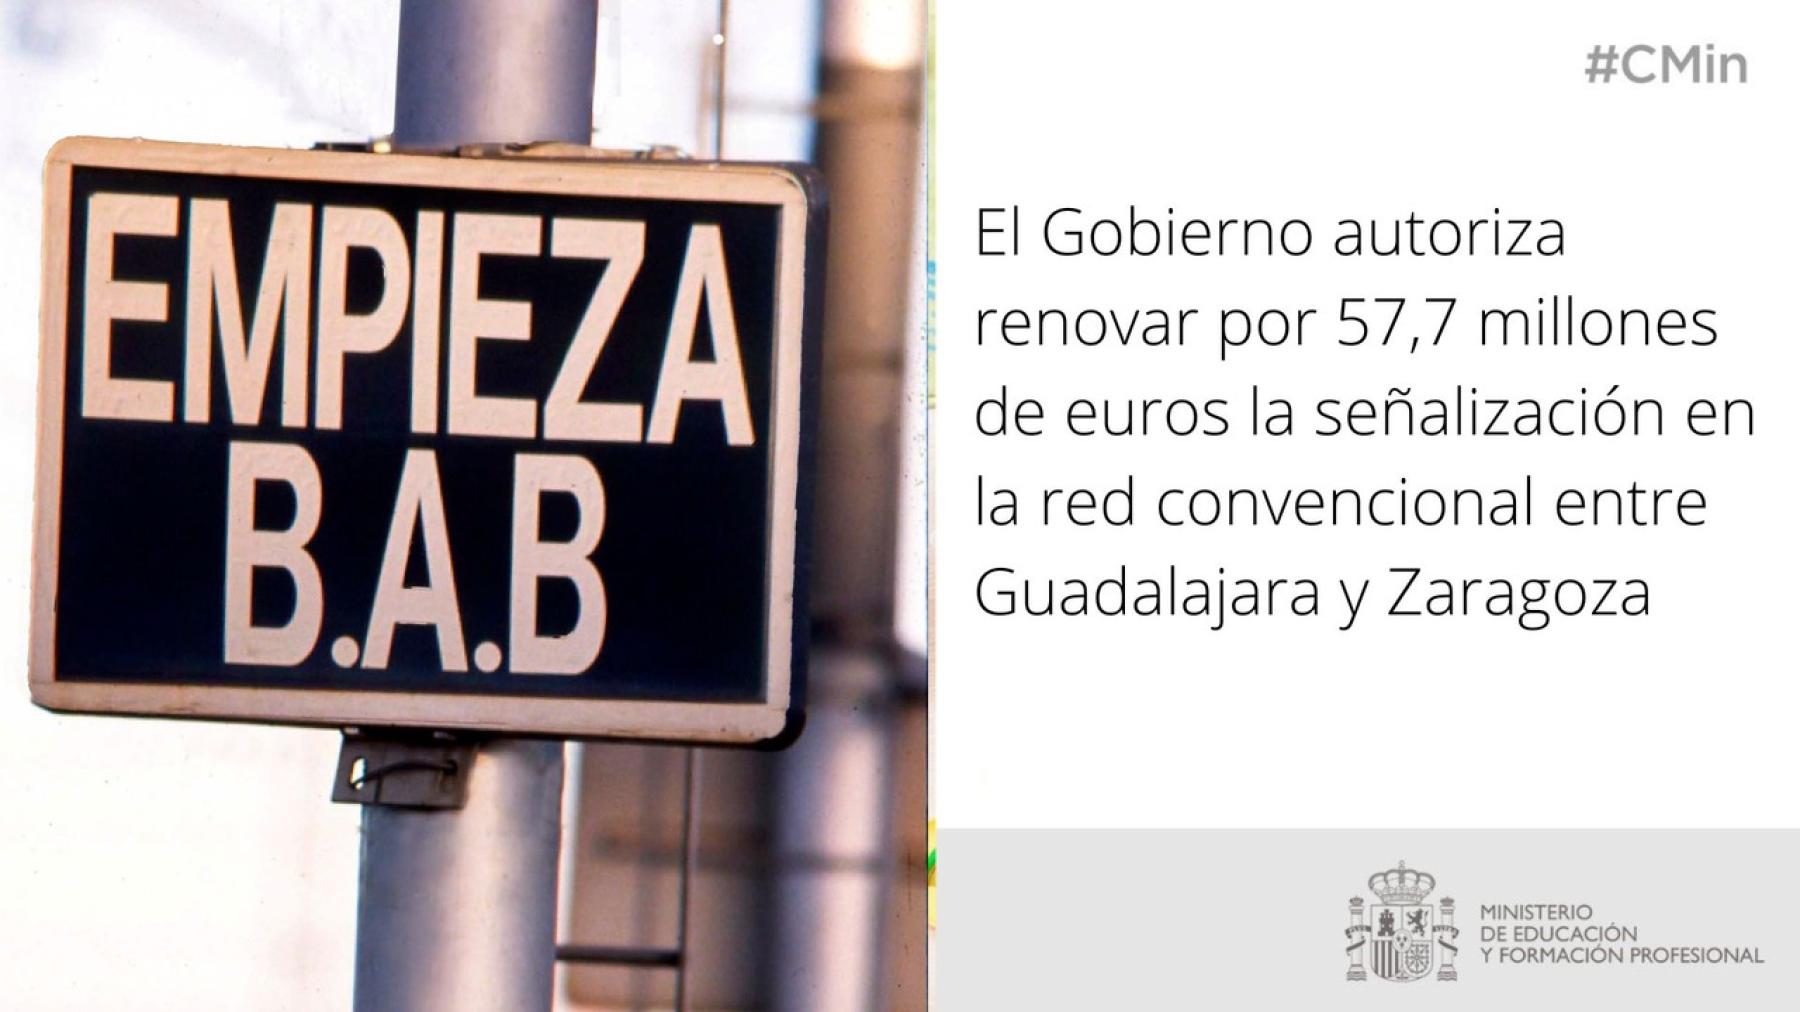 El Gobierno autoriza renovar por 57,7 millones de euros la señalización en la red convencional entre Guadalajara y Zaragoza